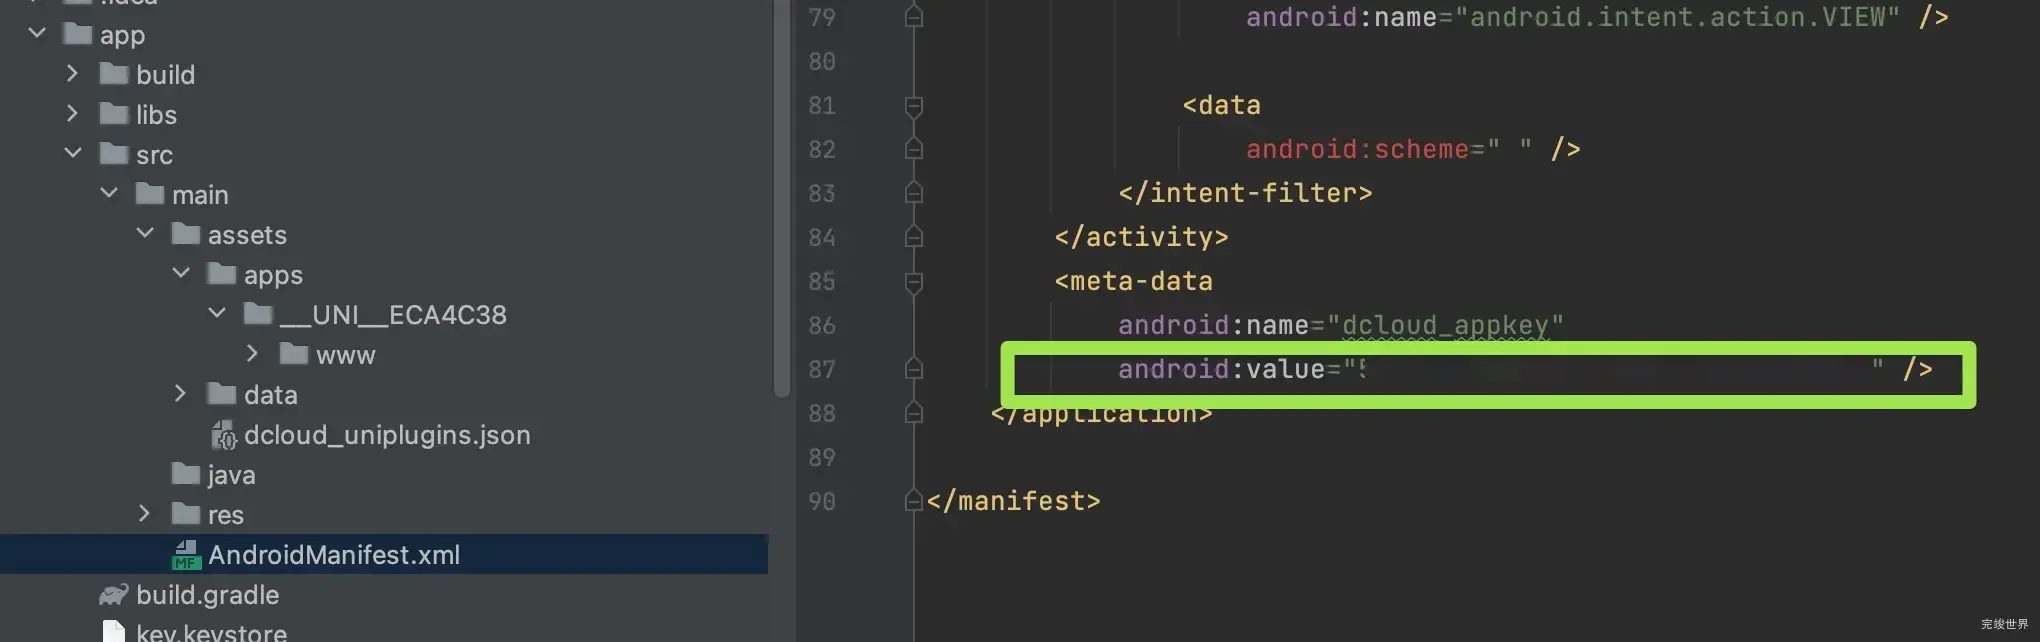 找到AndroidManifest.xml，将里面的appkey改为我们上面申请新的appkey